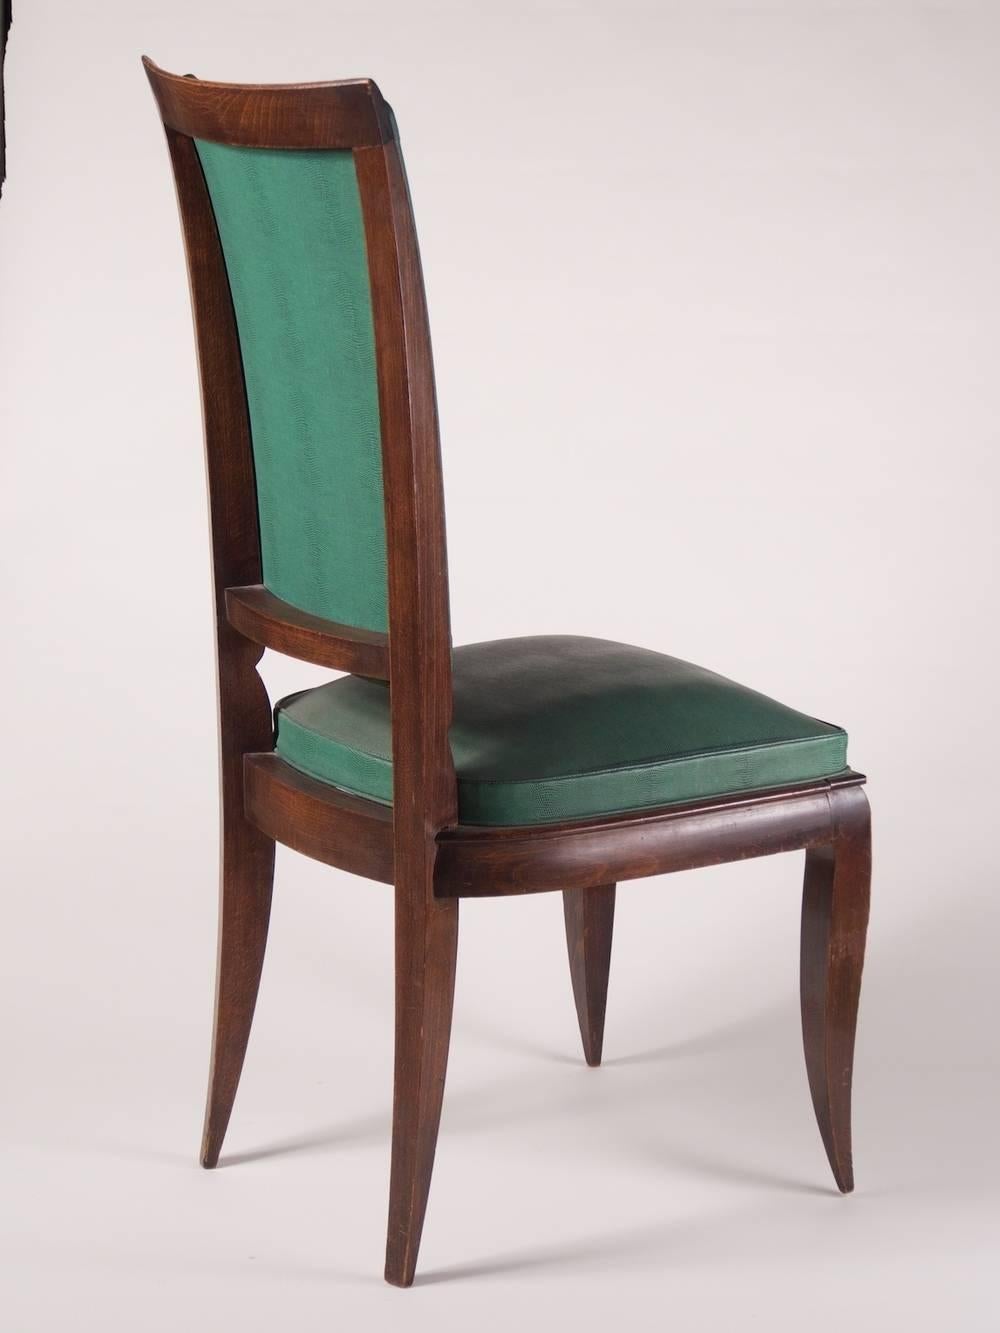 Chaises de salle à manger Art Déco des années 1940, ensemble de six par Rene Prou, en hêtre teinté. Ces chaises pourraient être ébonisées.

Veuillez noter que ces chaises ne sont pas restaurées sur les photos.

**Le prix comprend la restauration, la